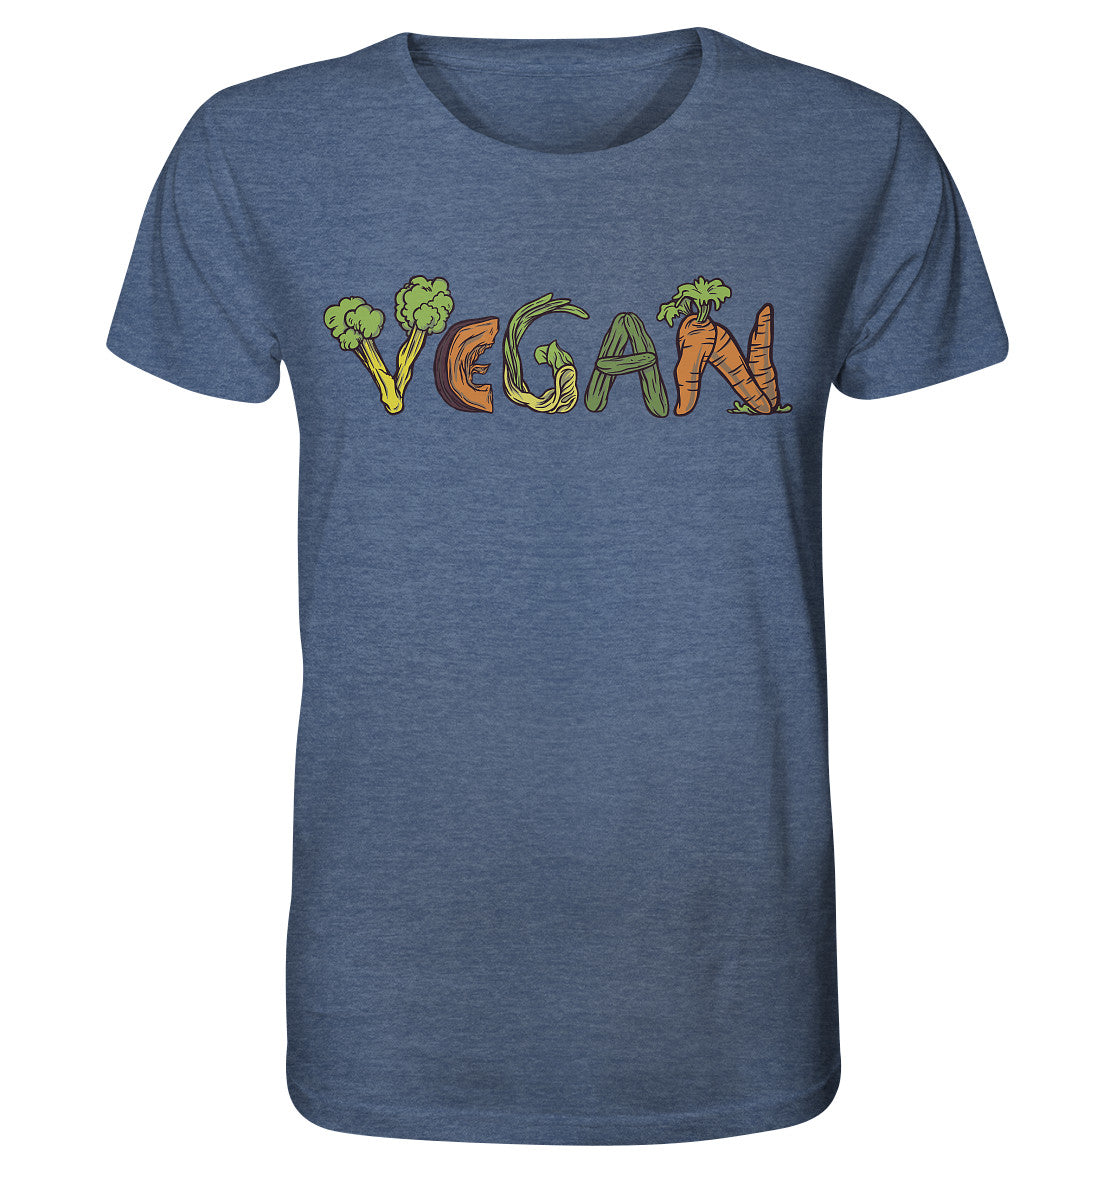 Vegan - Herren Bio Shirt (meliert)